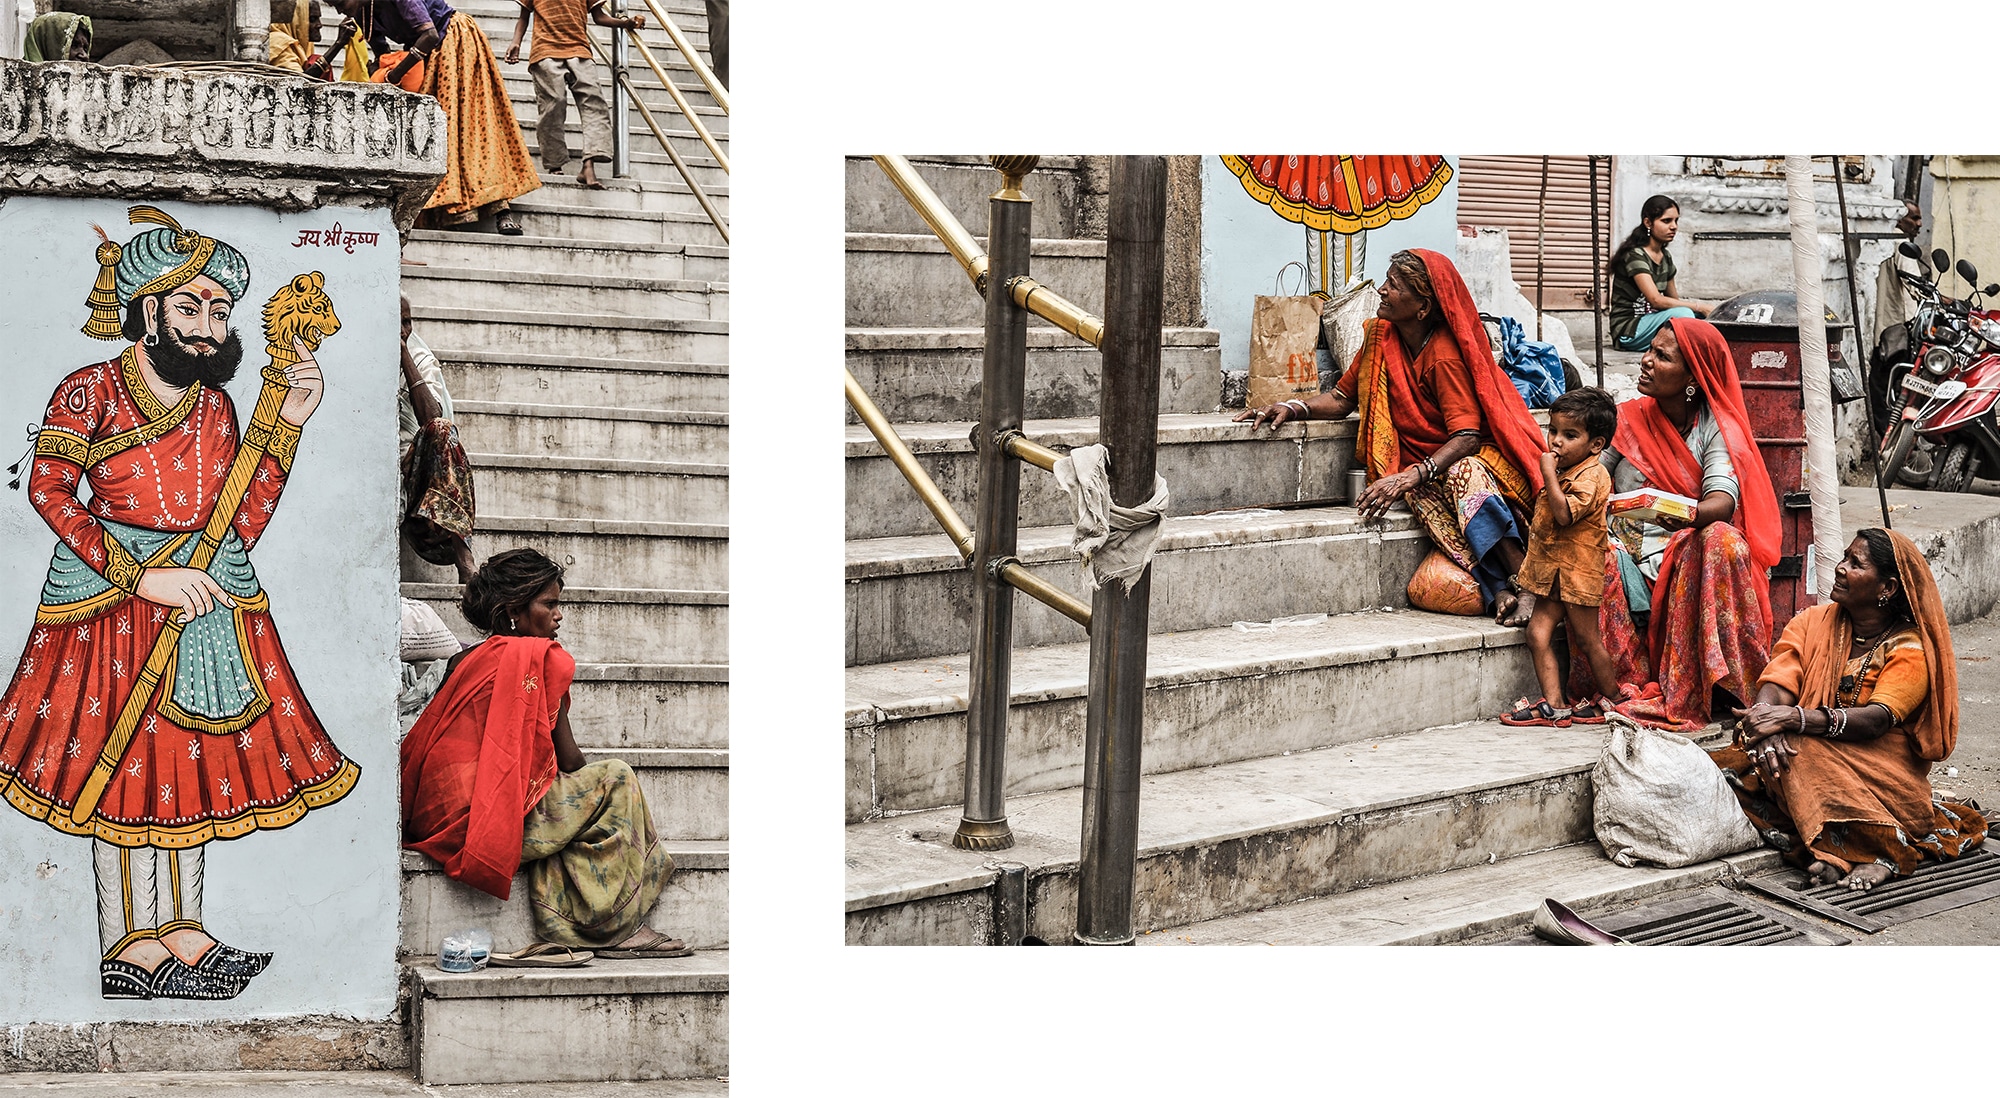 Des femmes hindous vêtues de rouge à Udaipur en Inde